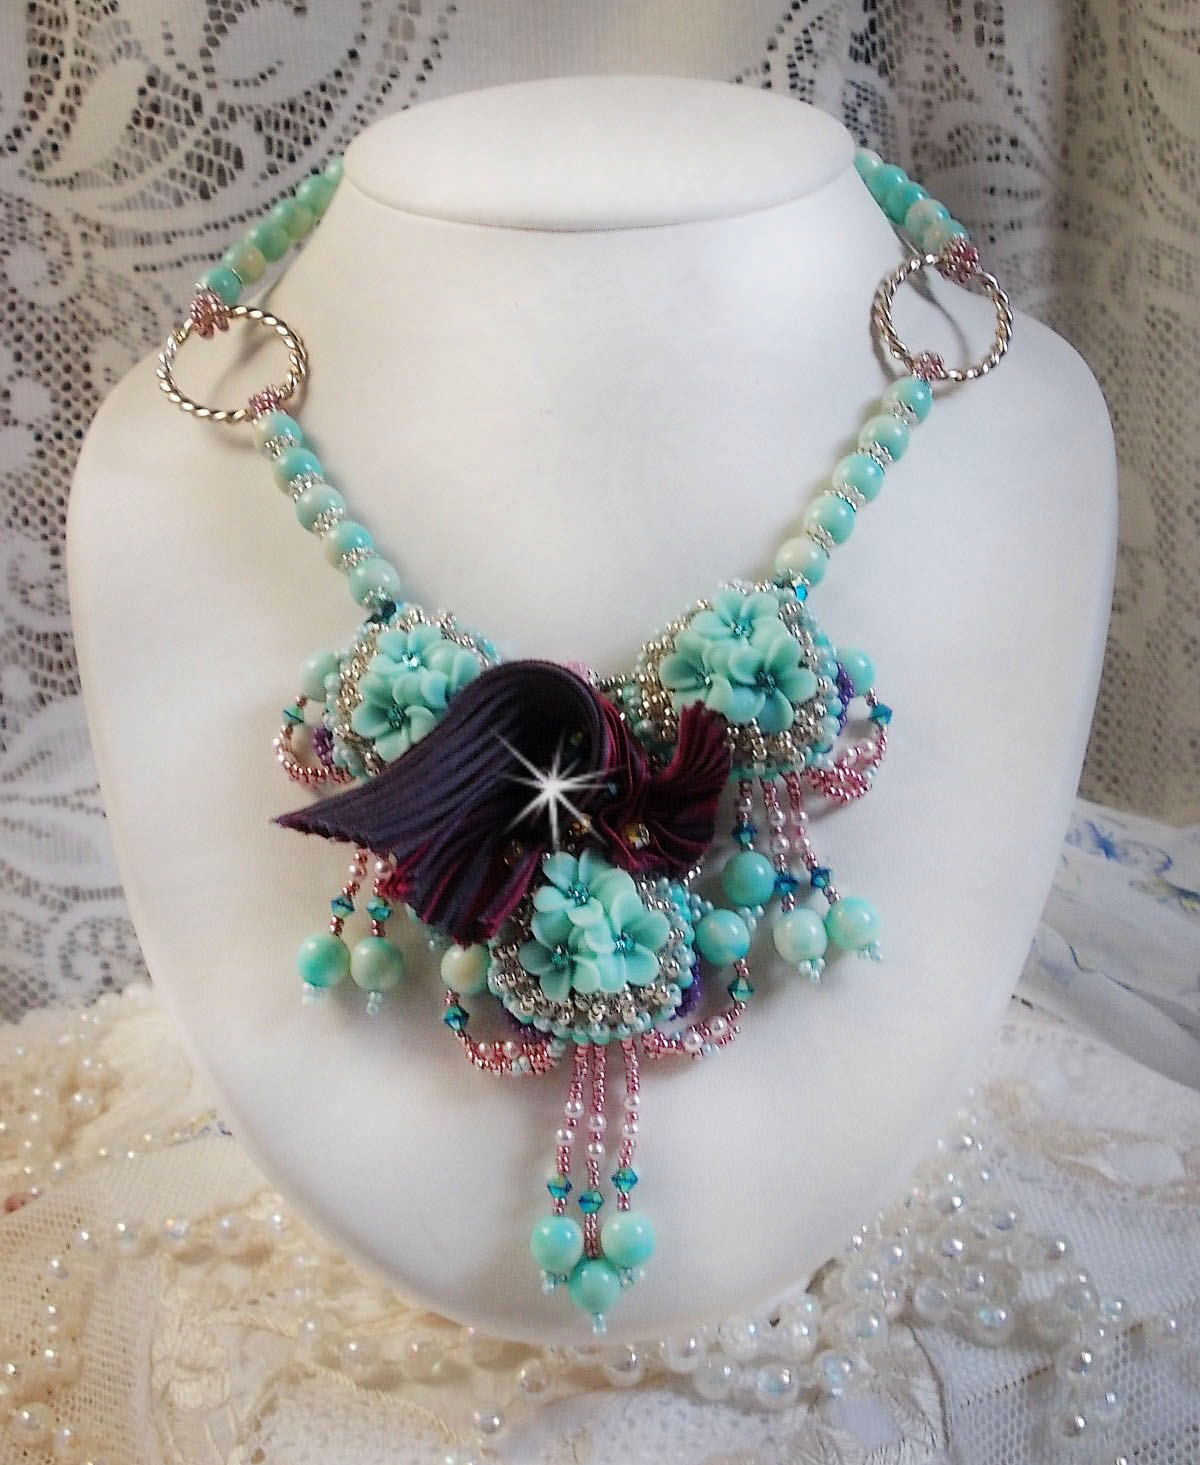 Collier Blue Flowers Haute-Couture brodé avec des Cristaux de Swarovski, un ruban de soie de couleur Truffe/Framboise et des rocailles